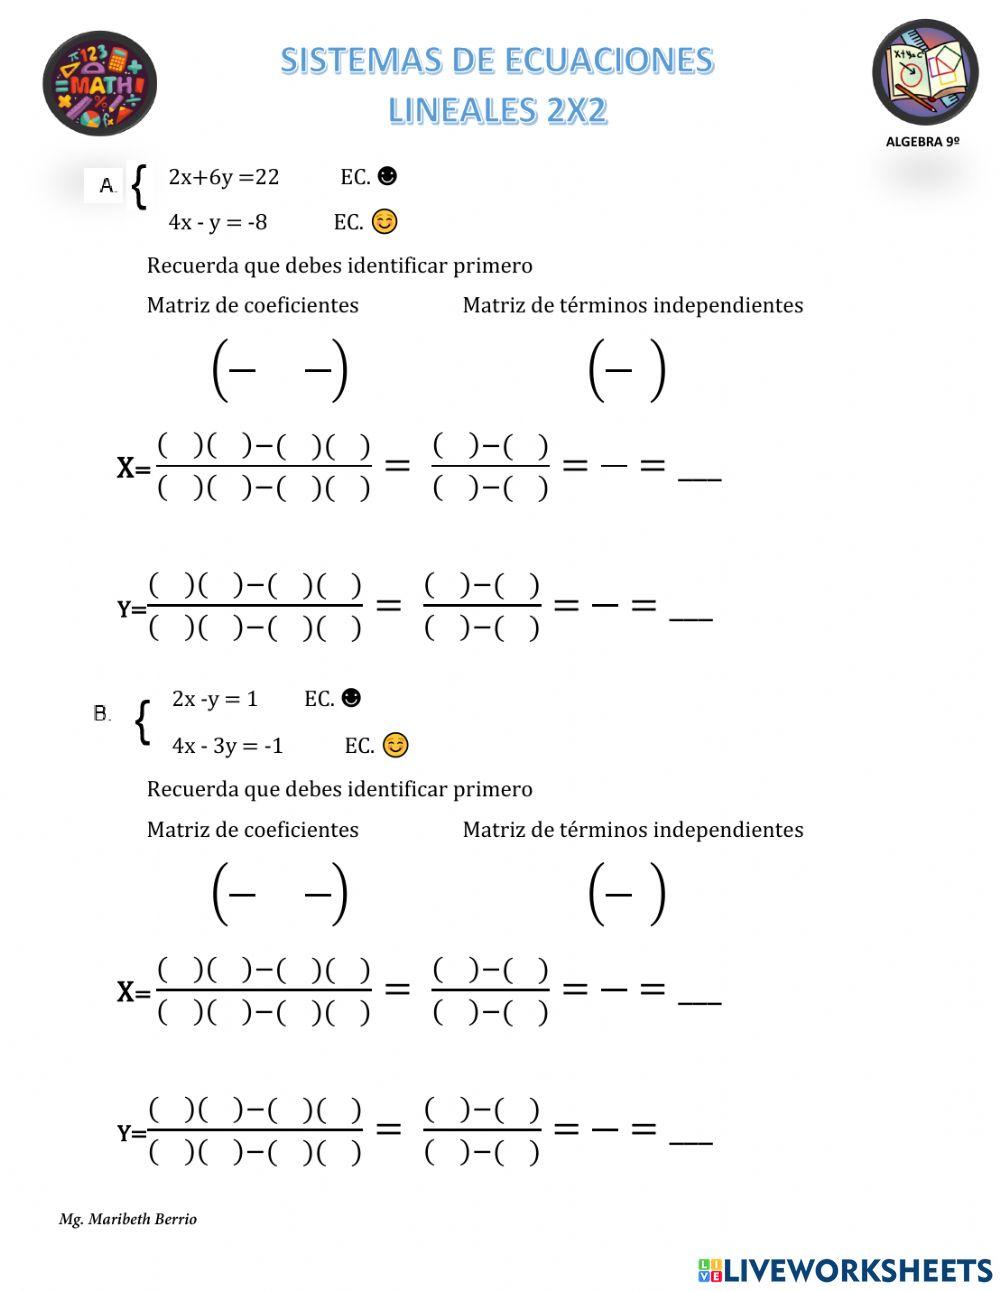 Sistemas de Ecuaciones 2x2. Método igualación y regla de Crammer